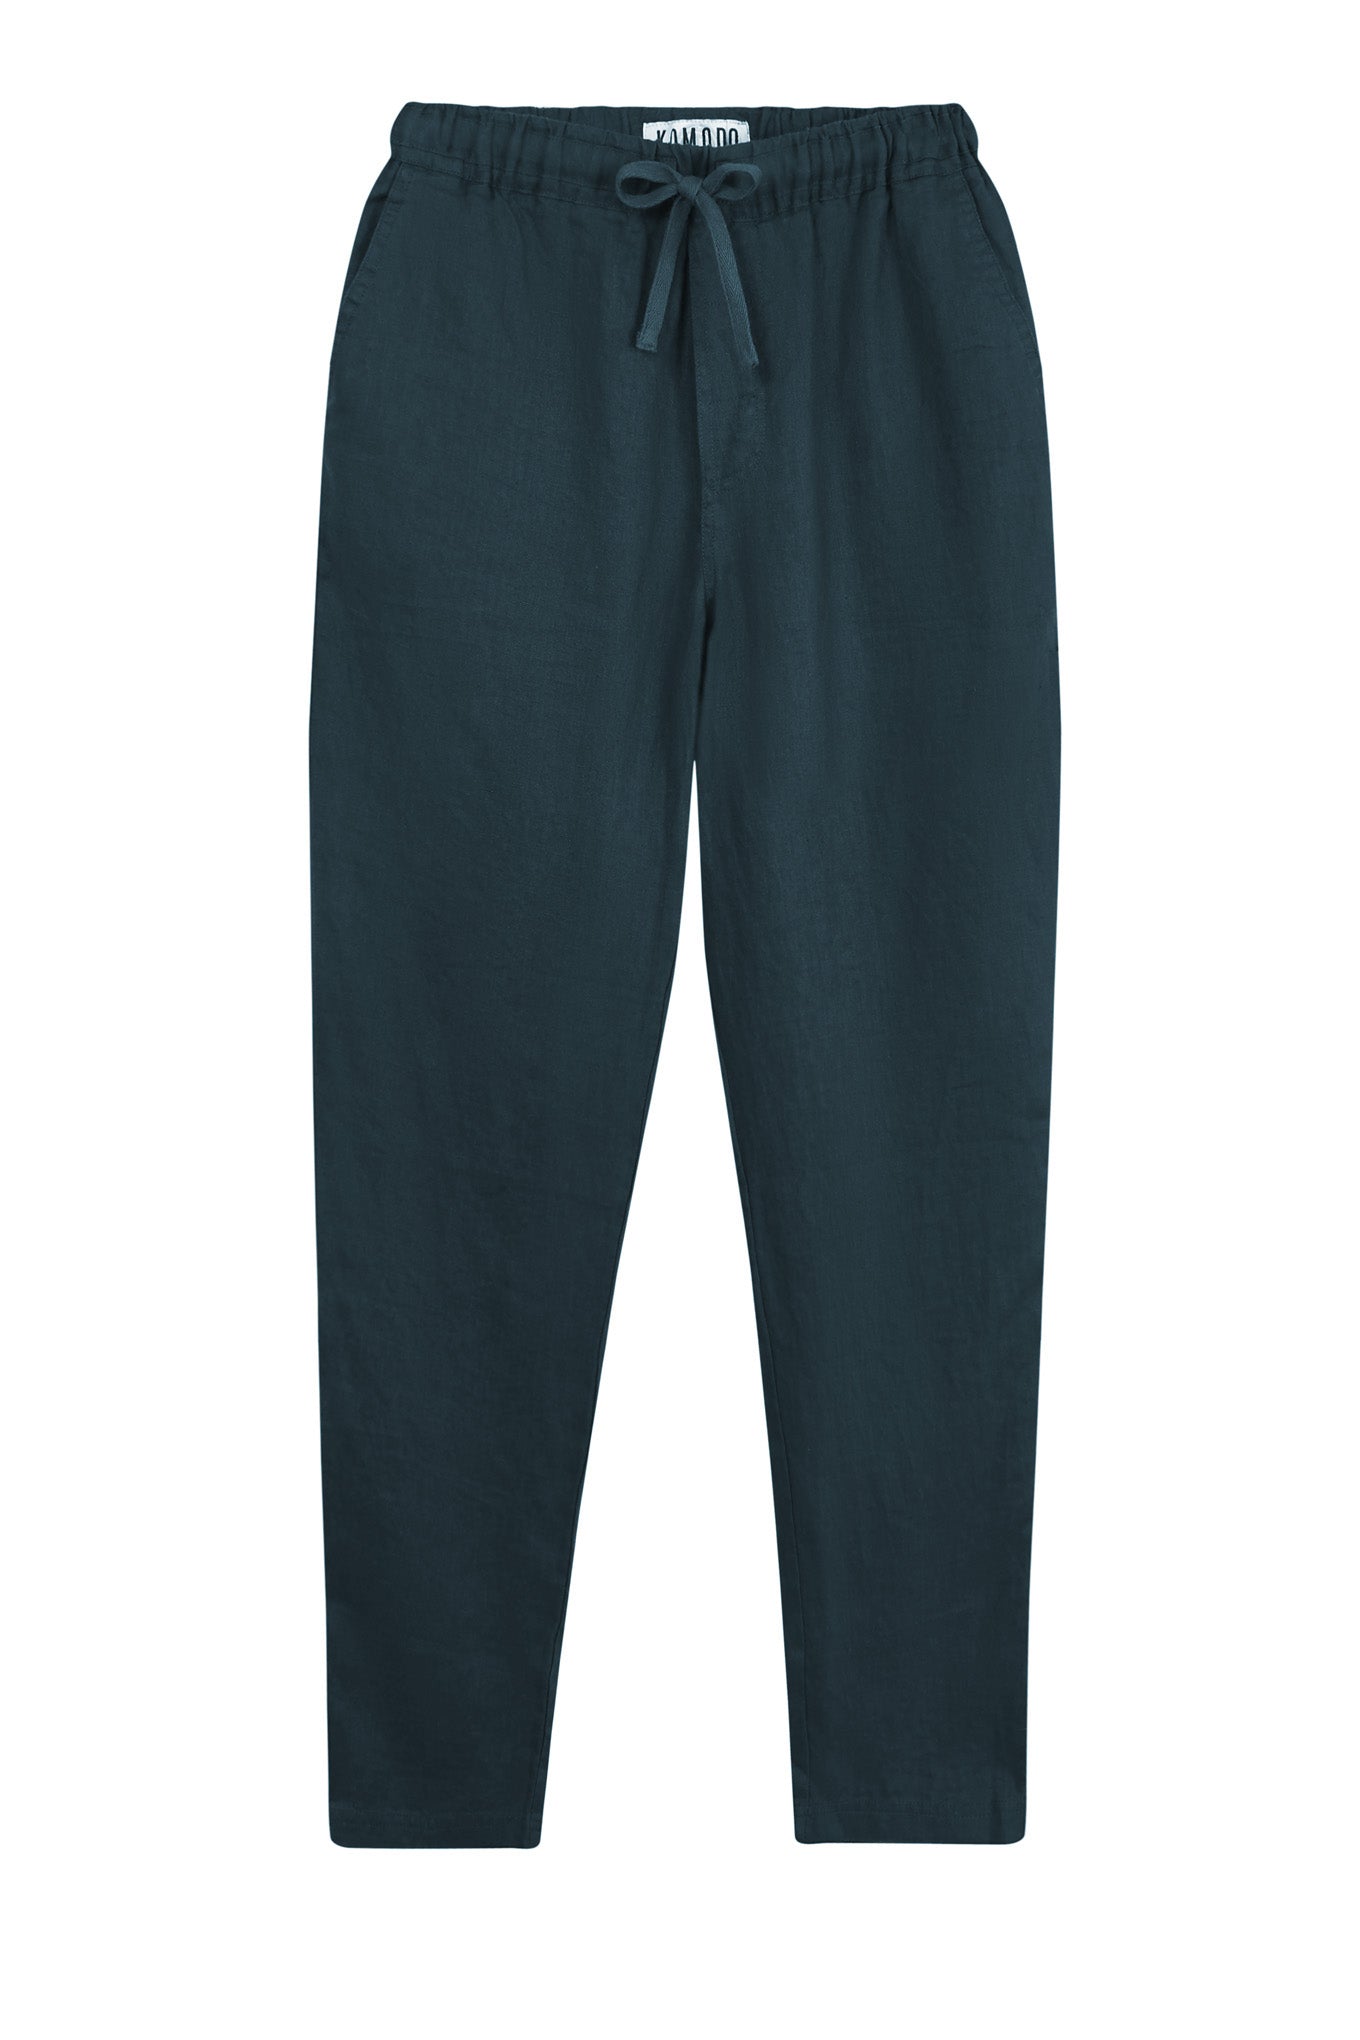 AUGUST Organic Linen Men's Trouser - Teal Green